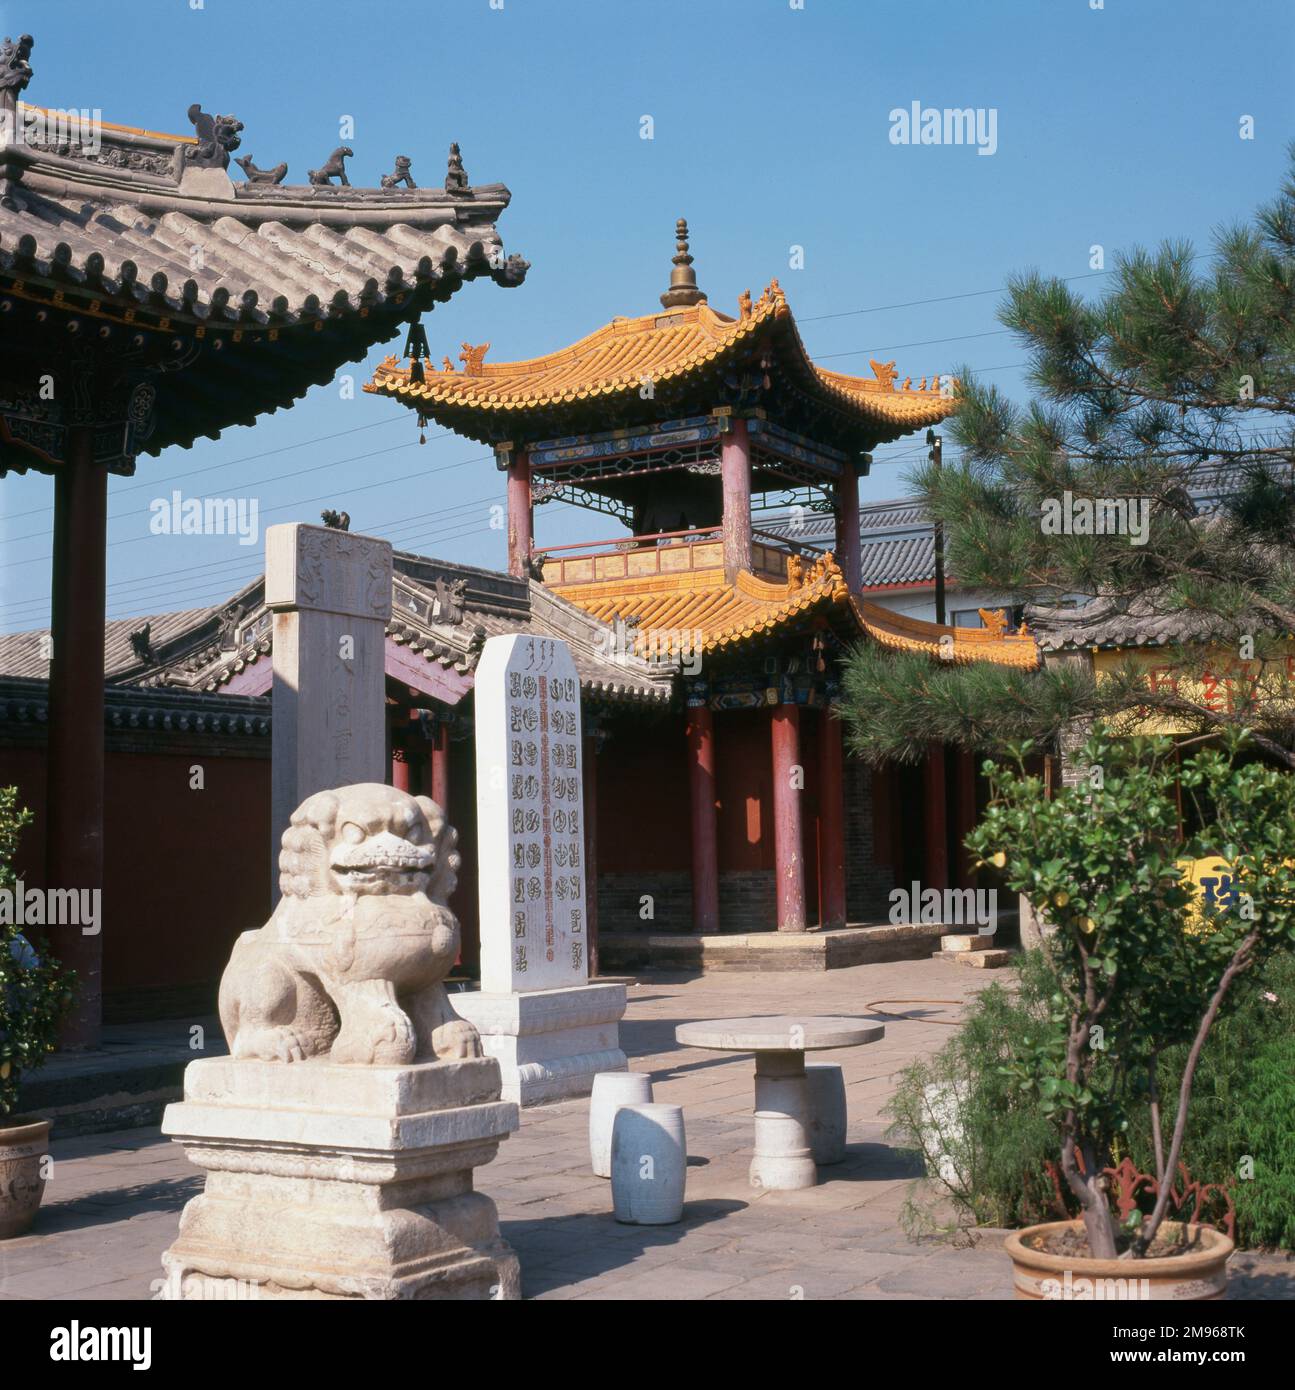 Teil des Da Zhao Tempels (bedeutet Infinite Temple), ein buddhistisches Kloster in Hohhot, der inneren Mongolei, in der Volksrepublik China. Hohhot ist die Hauptstadt der inneren Mongolischen Autonomen Region und dient als administratives, wirtschaftliches und kulturelles Zentrum der Region. Das Kloster selbst wurde 1579 während der Ming-Dynastie erbaut und ist ein Veranstaltungsort für buddhistische Festivals, die das ganze Jahr über stattfinden. Eine der Drachenskulpturen, die sich auf die mongolische Legende beziehen, ist auf diesem Foto zu sehen. Stockfoto